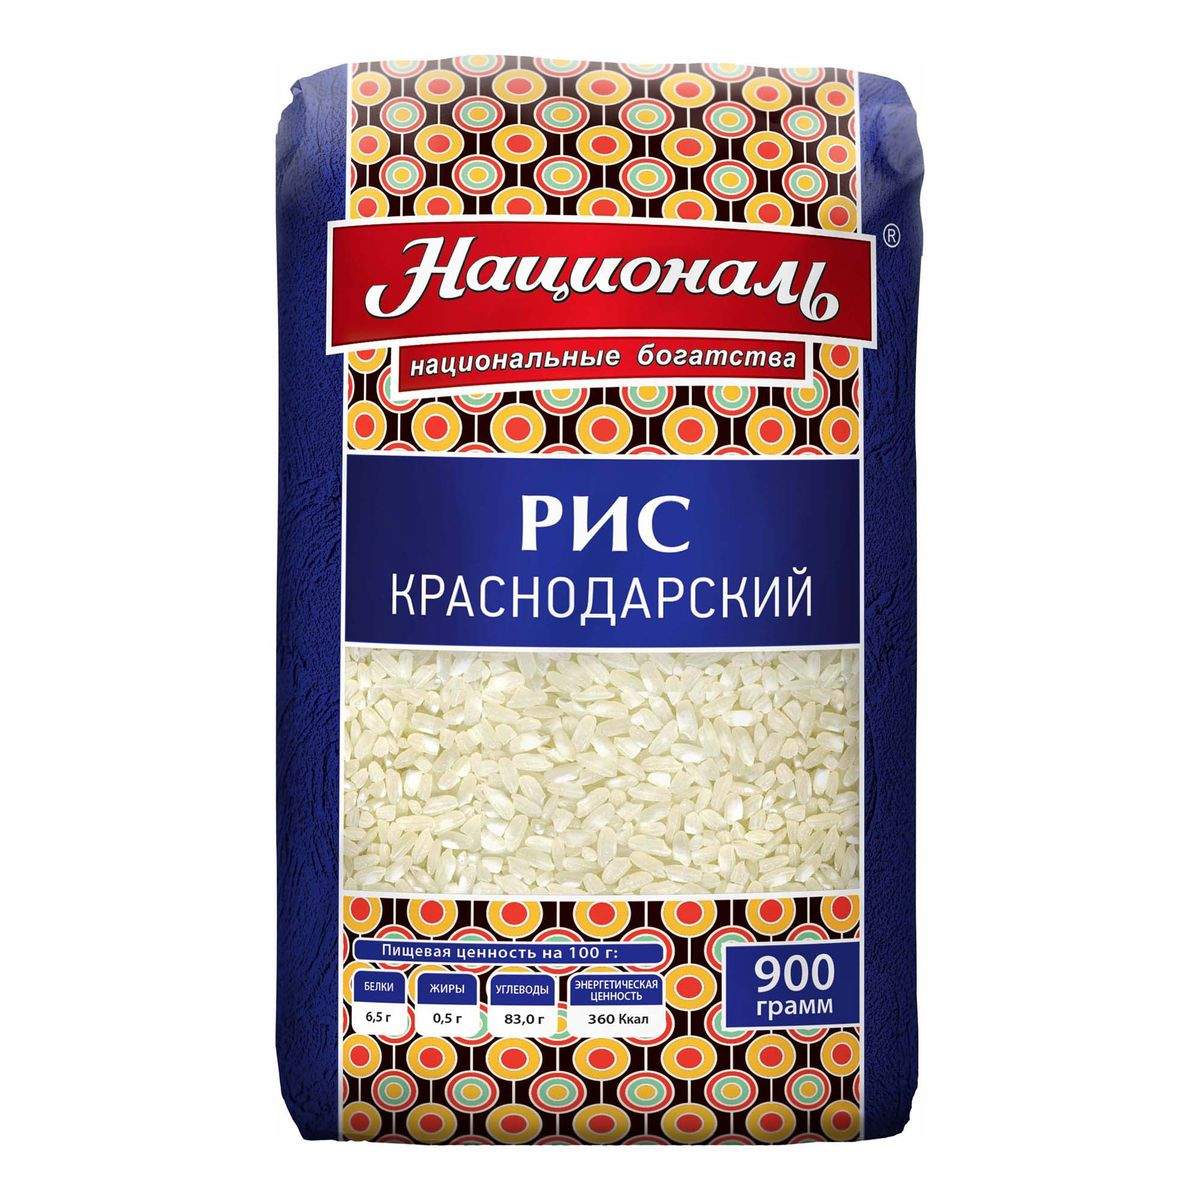 Рис Националь Краснодарский 900 г - купить в Мегамаркет Москва Пушкино, цена на Мегамаркет